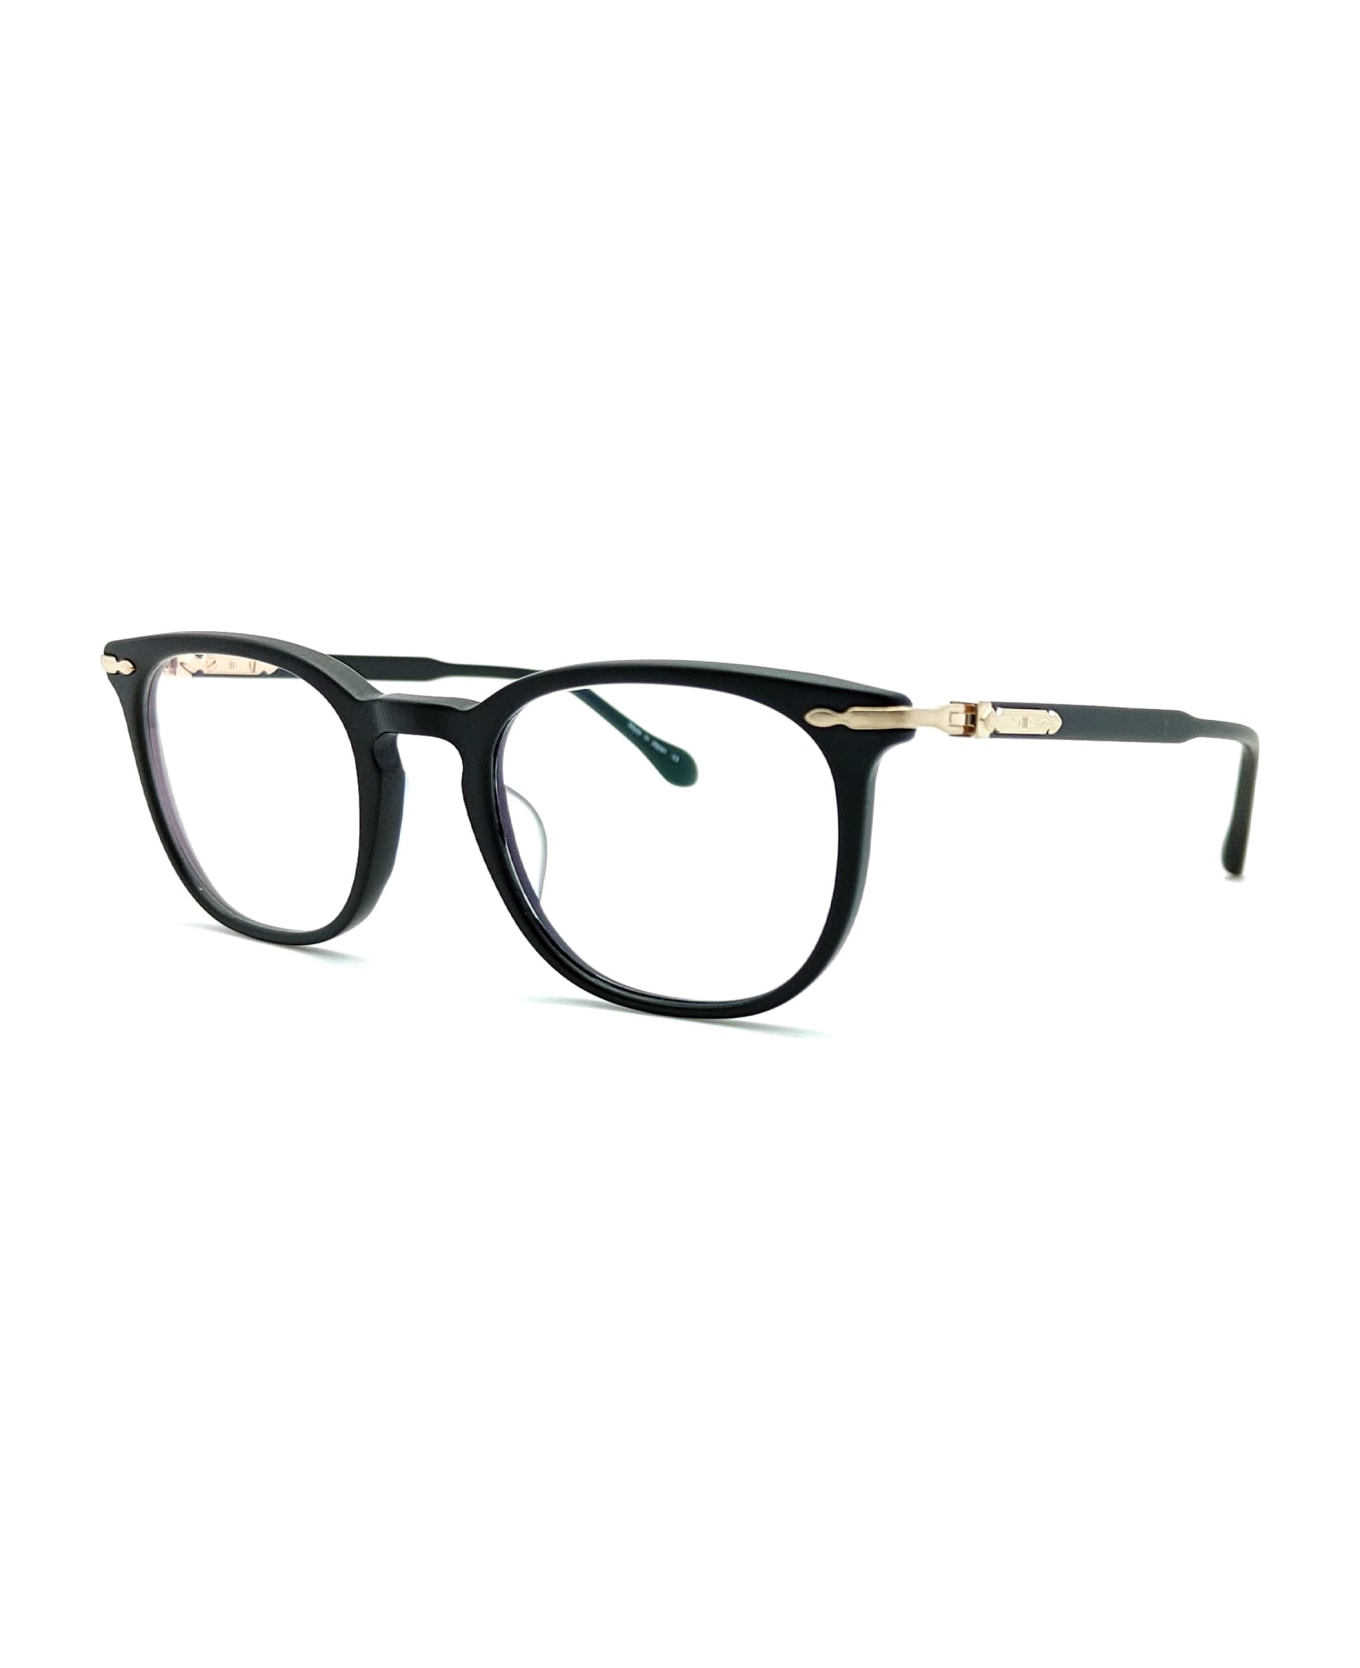 Matsuda M2047 - Matte Black / Brushed Gold Rx Glasses - Matte black アイウェア